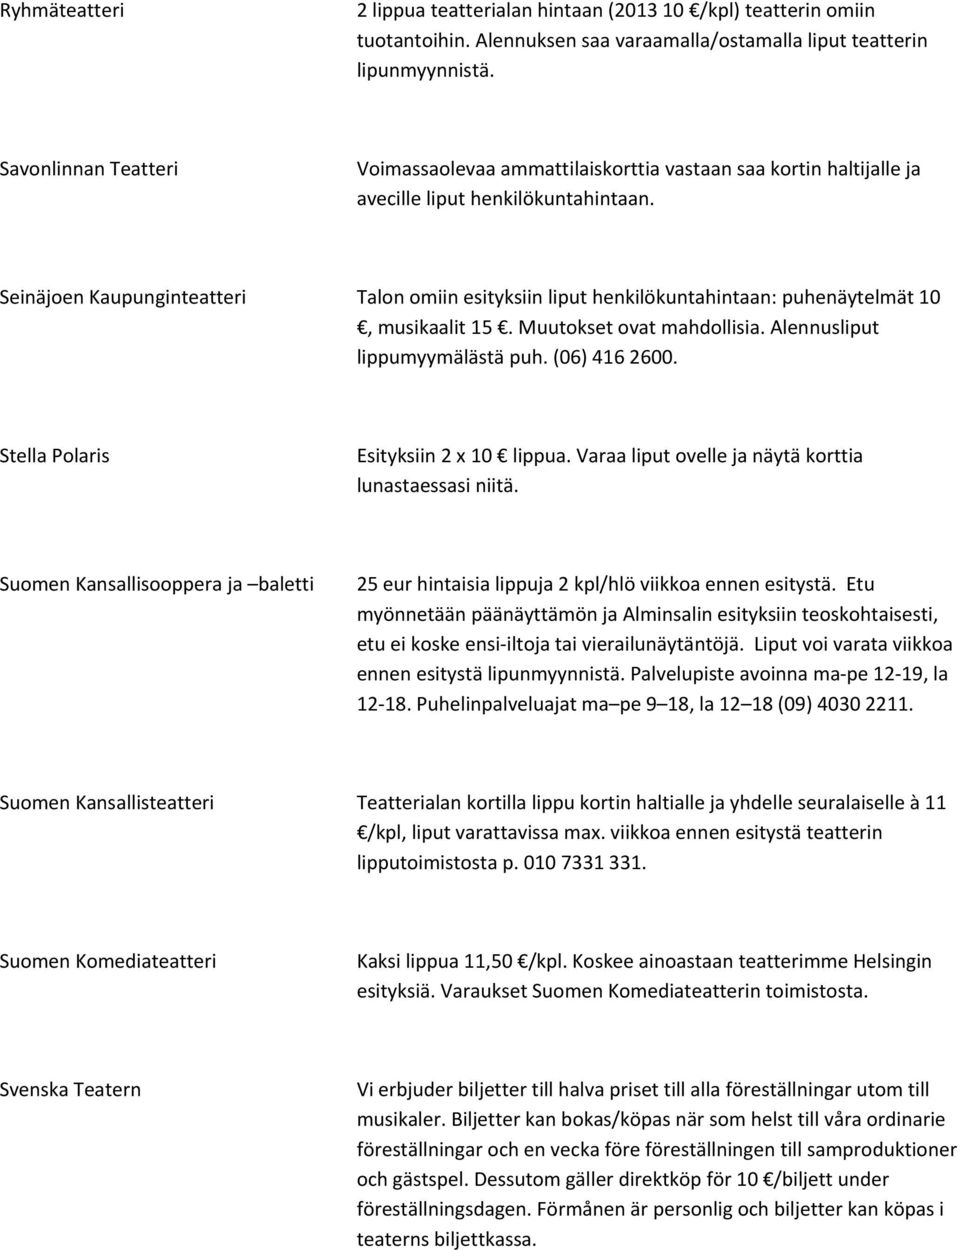 Seinäjoen Kaupunginteatteri Talon omiin esityksiin liput henkilökuntahintaan: puhenäytelmät 10, musikaalit 15. Muutokset ovat mahdollisia. Alennusliput lippumyymälästä puh. (06) 416 2600.